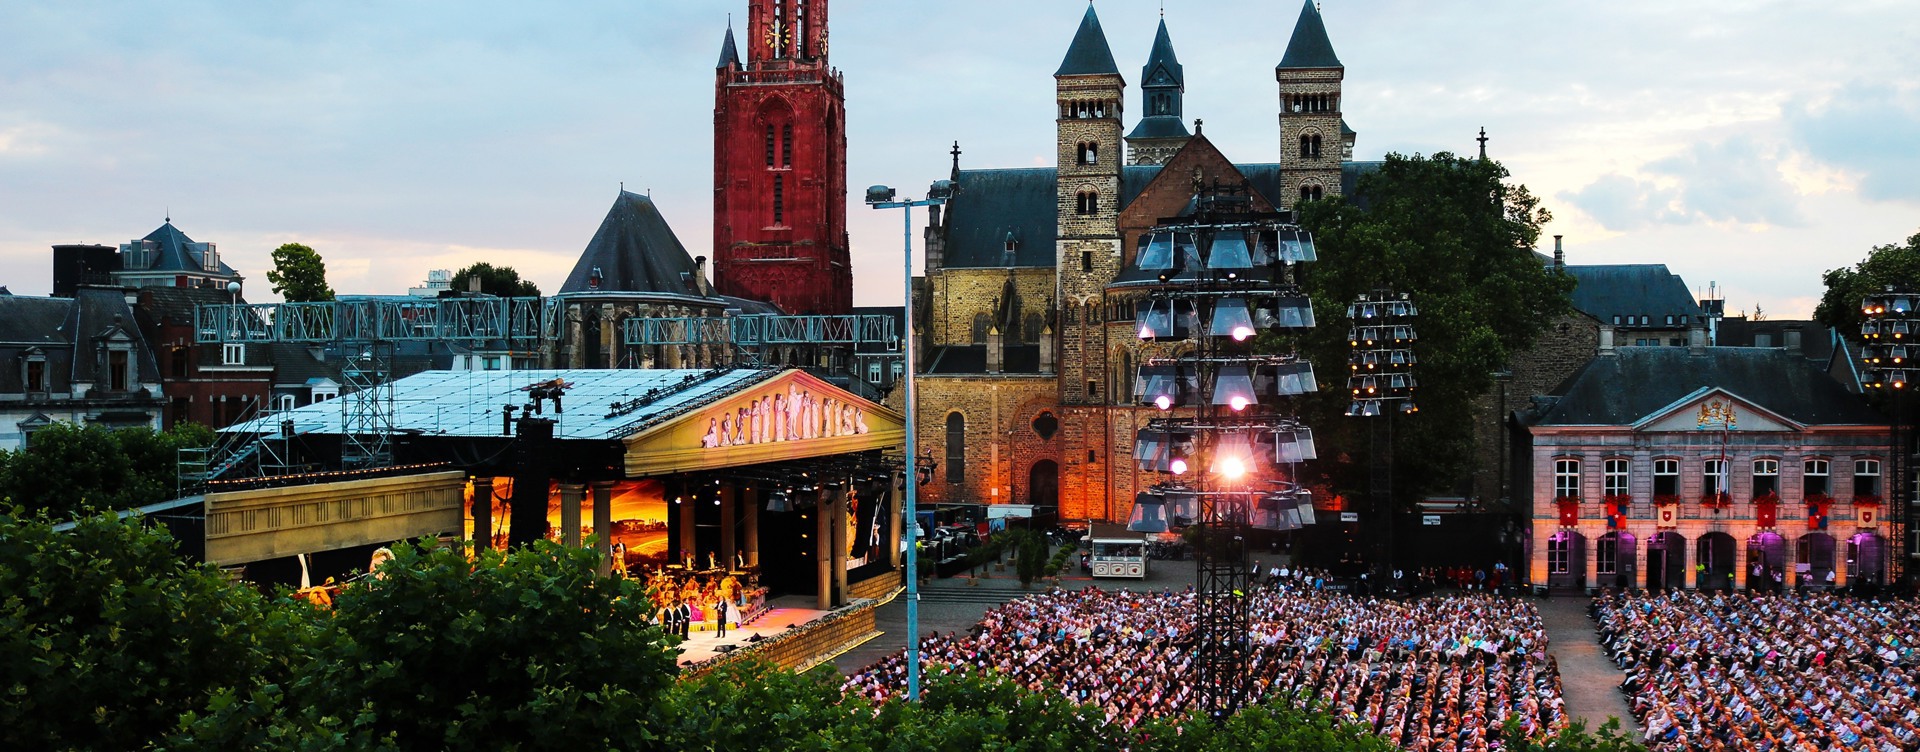 Geniet van de traditionele zomeravondconcerten
van André Rieu in Maastricht